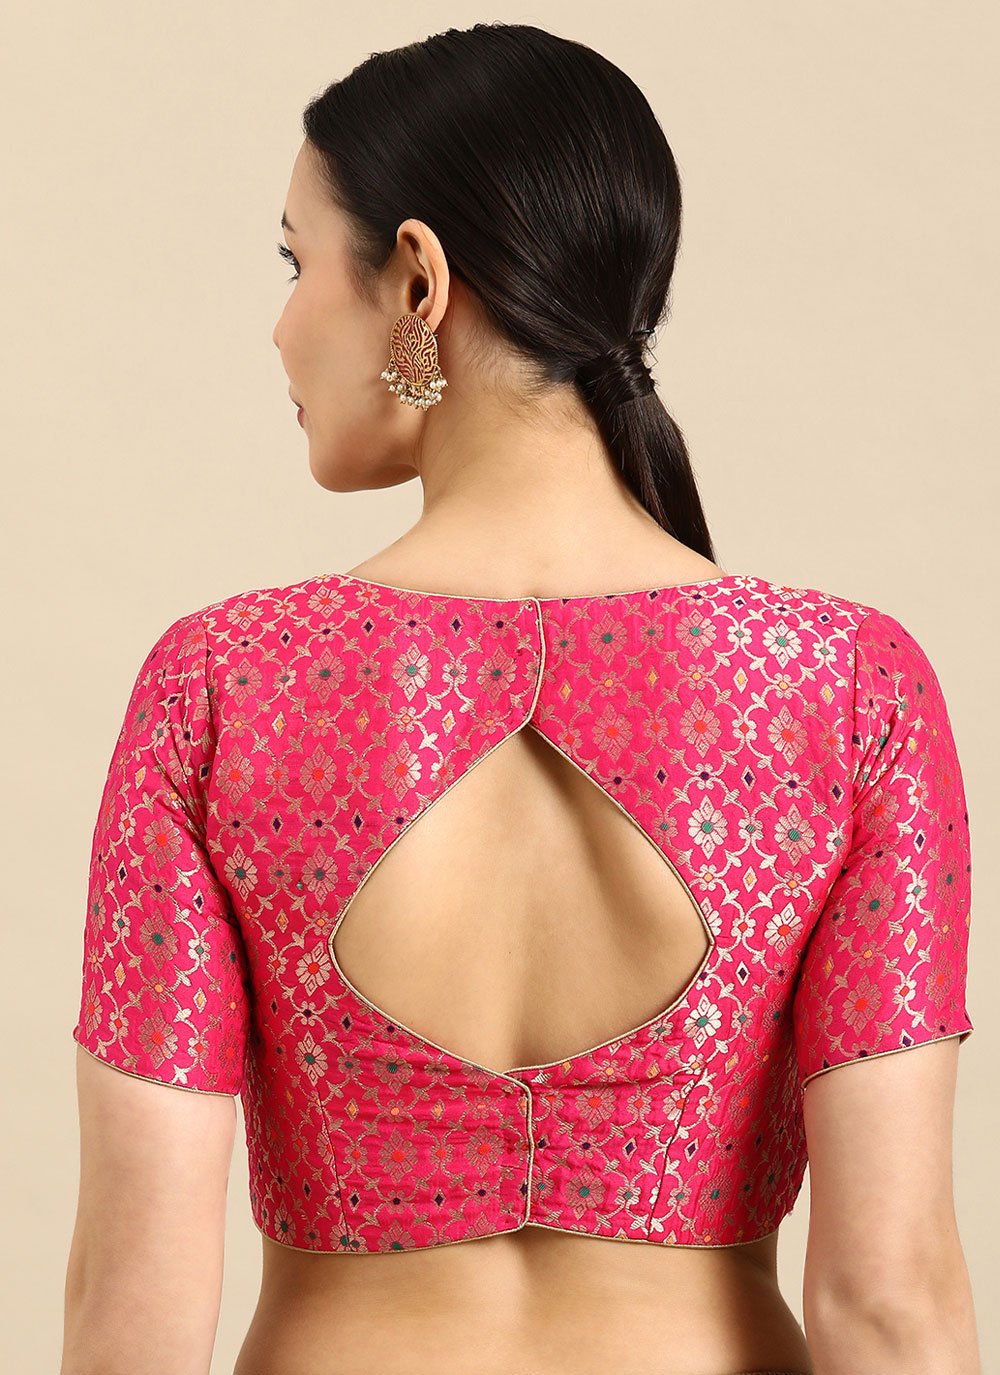 Designer Blouse Banarasi Jacquard Hot Pink Weaving Blouse